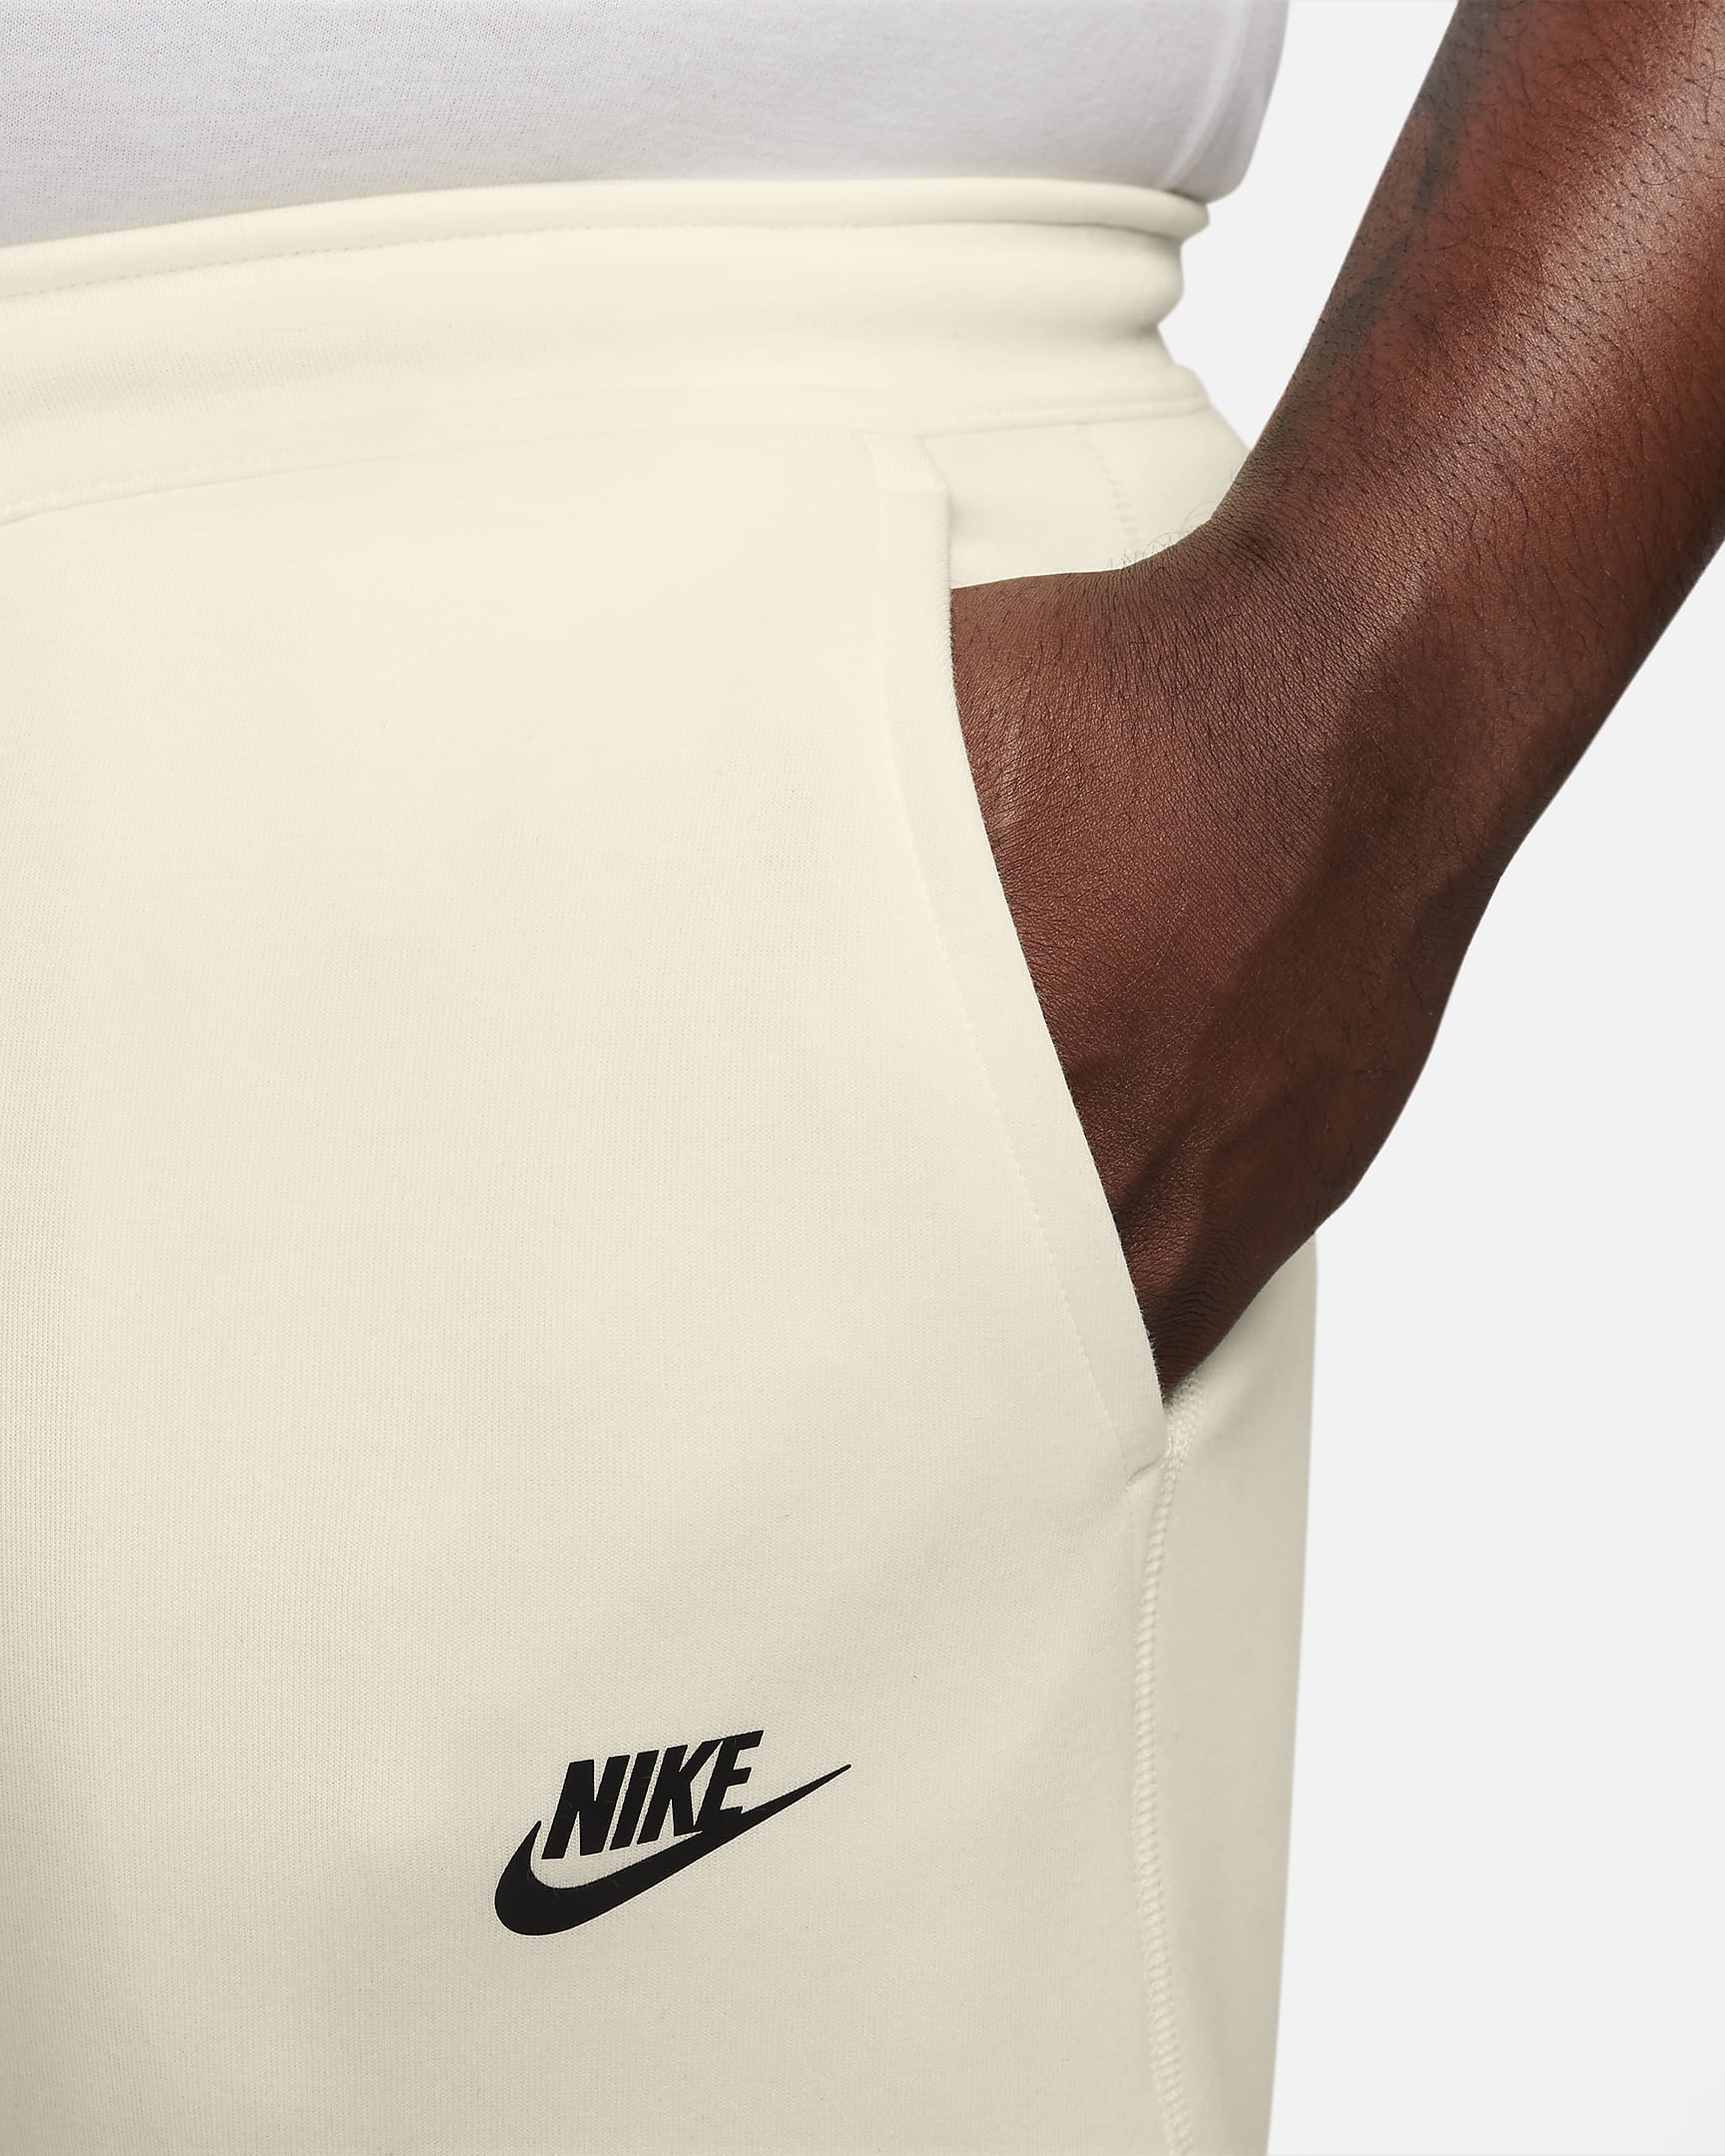 Nike Sportswear Tech Fleece Men's Joggers - Coconut Milk/Black